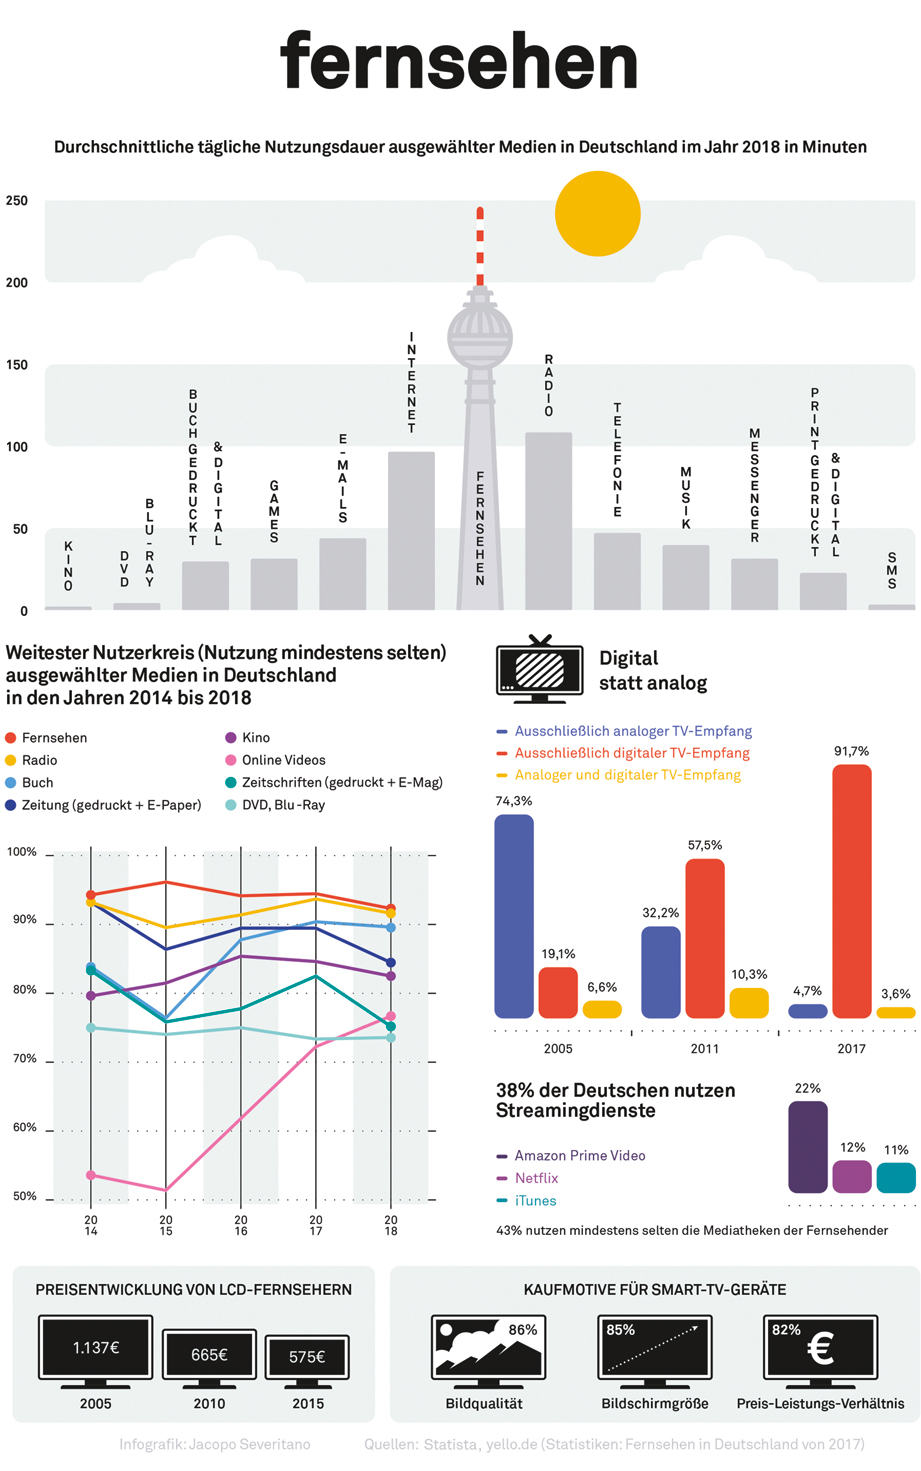 Grafiken zur Nutzungsdauer ausgewählter Medien in Deutschland 2018 (Infografik: Jacopo Severitano)